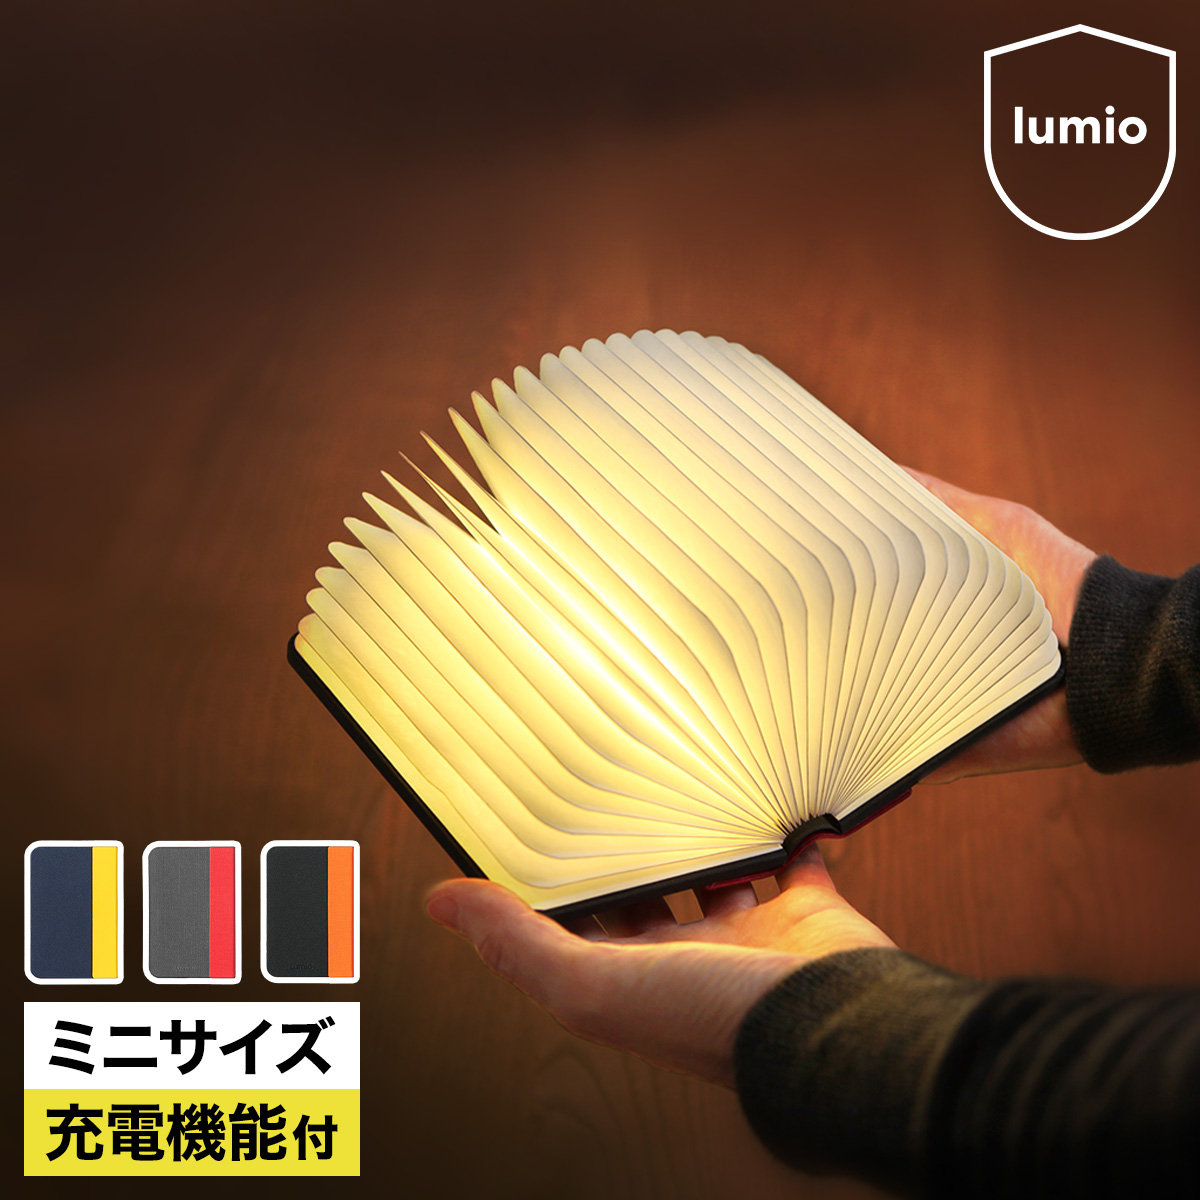 ファブリック製の表紙を開くと幻想的な光が広がるブック型の充電式LEDライト 人気No.1 本体 ルミオ ミニ 一充電機能も付いてさらに便利になったコンパクトサイズのルミオです mini Lumio V2 ブック型LEDライト ブック型 LEDライト ブック型ライト 授乳 小型 本型 テーブルライト LUMIO+ コードレス コンパクト 充電式 MINI デスクライト おしゃれ 照明 【国内正規品】 本型ライト 送料無料 ポータブル V.2